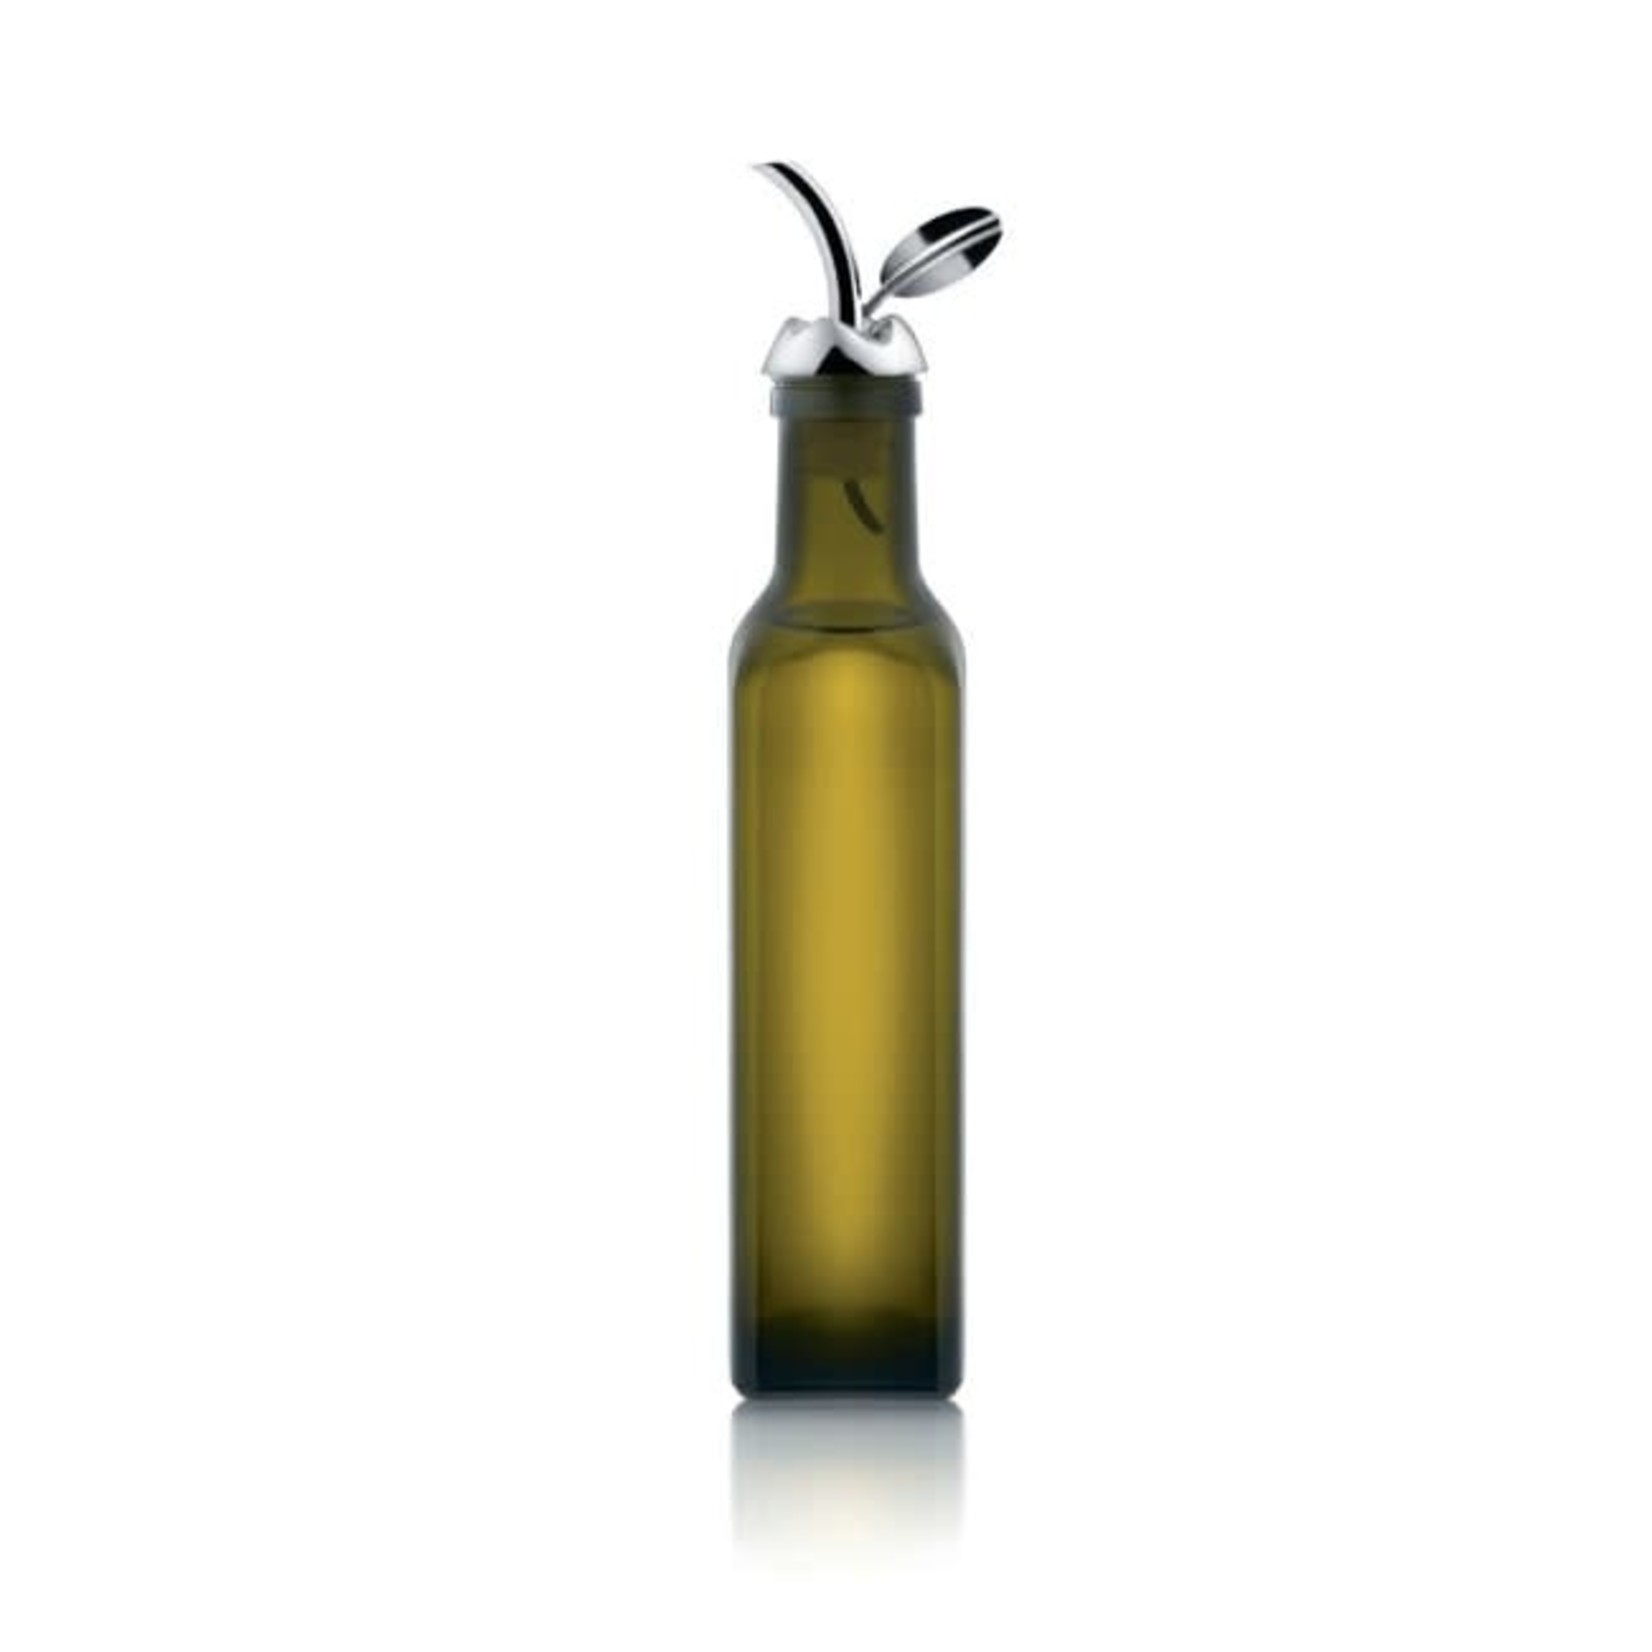 ALESSI Fior d'olio Olive Oil Pourer DNR